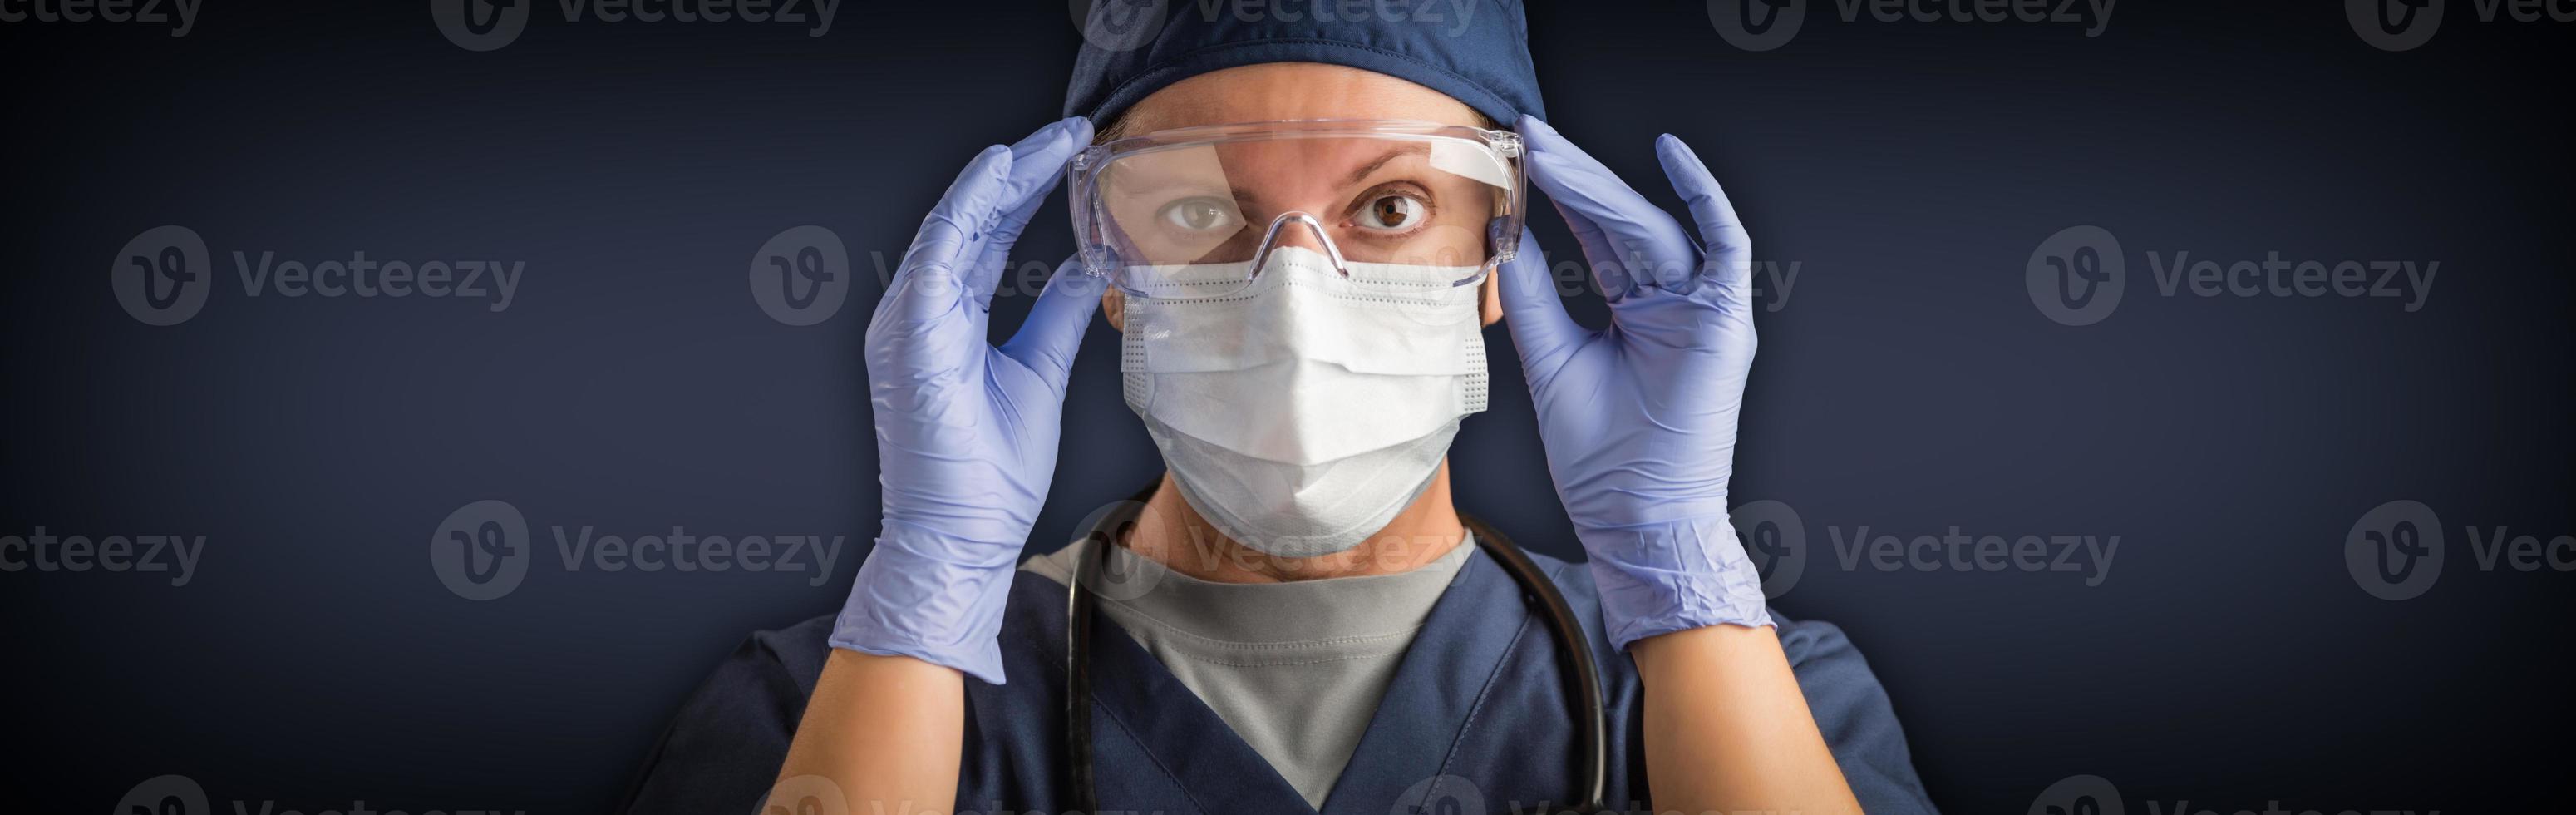 pancarta de doctora o enfermera con mascarilla médica y equipo de protección foto